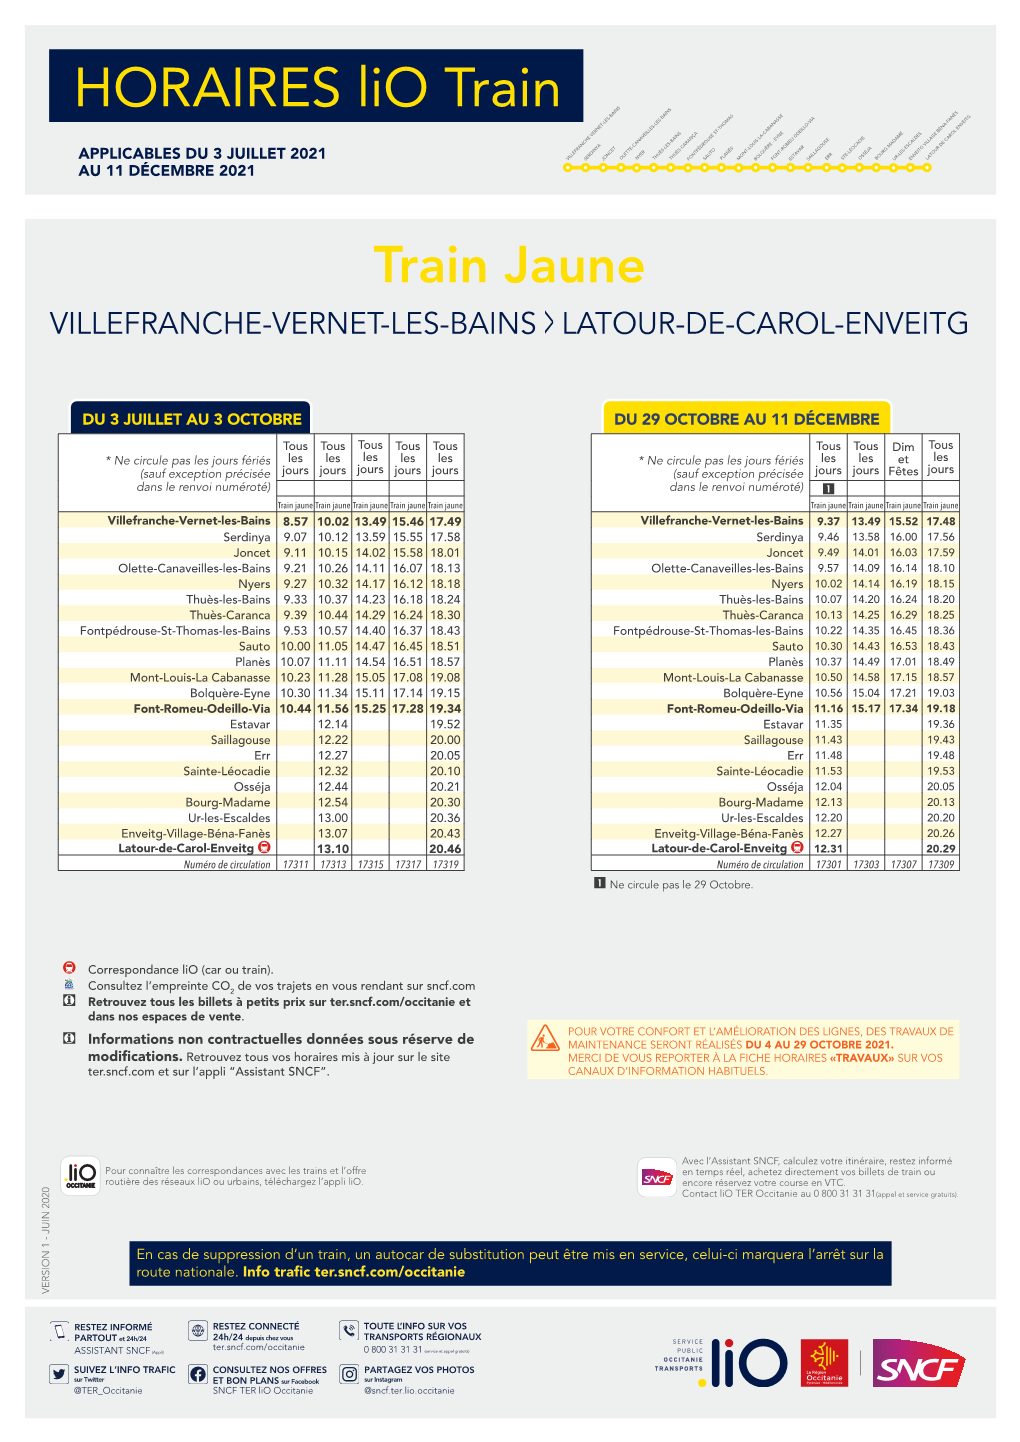 Train Jaune VILLEFRANCHE-VERNET-LES-BAINS LATOUR-DE-CAROL-ENVEITG